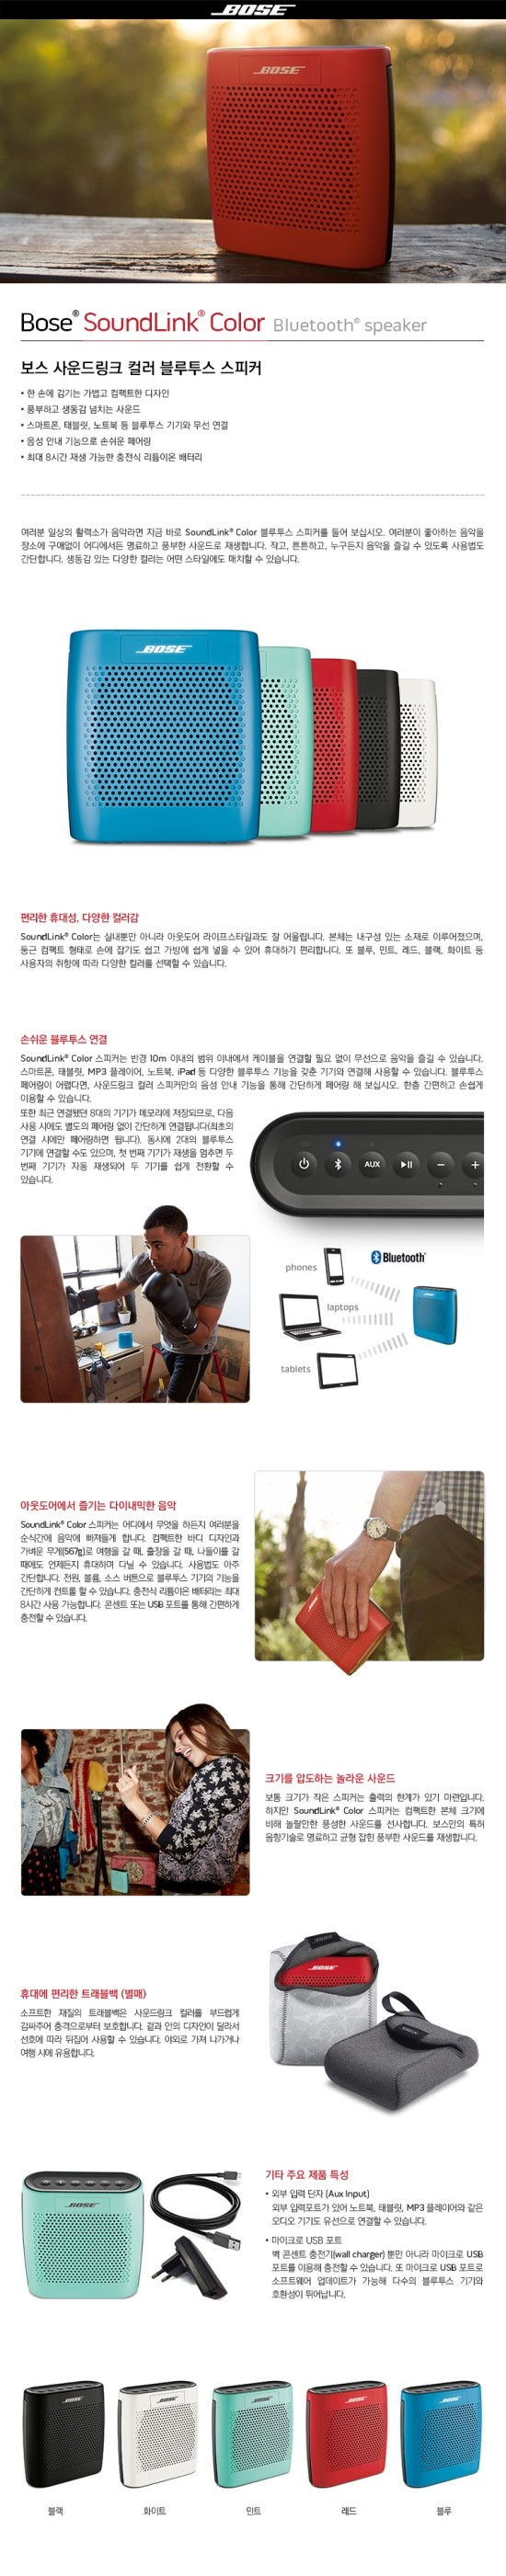 [BOSE] SoundLink Color Bluetooth speaker 광주보스매장 블루투스컬러 광주애플스토어 광주애플매장